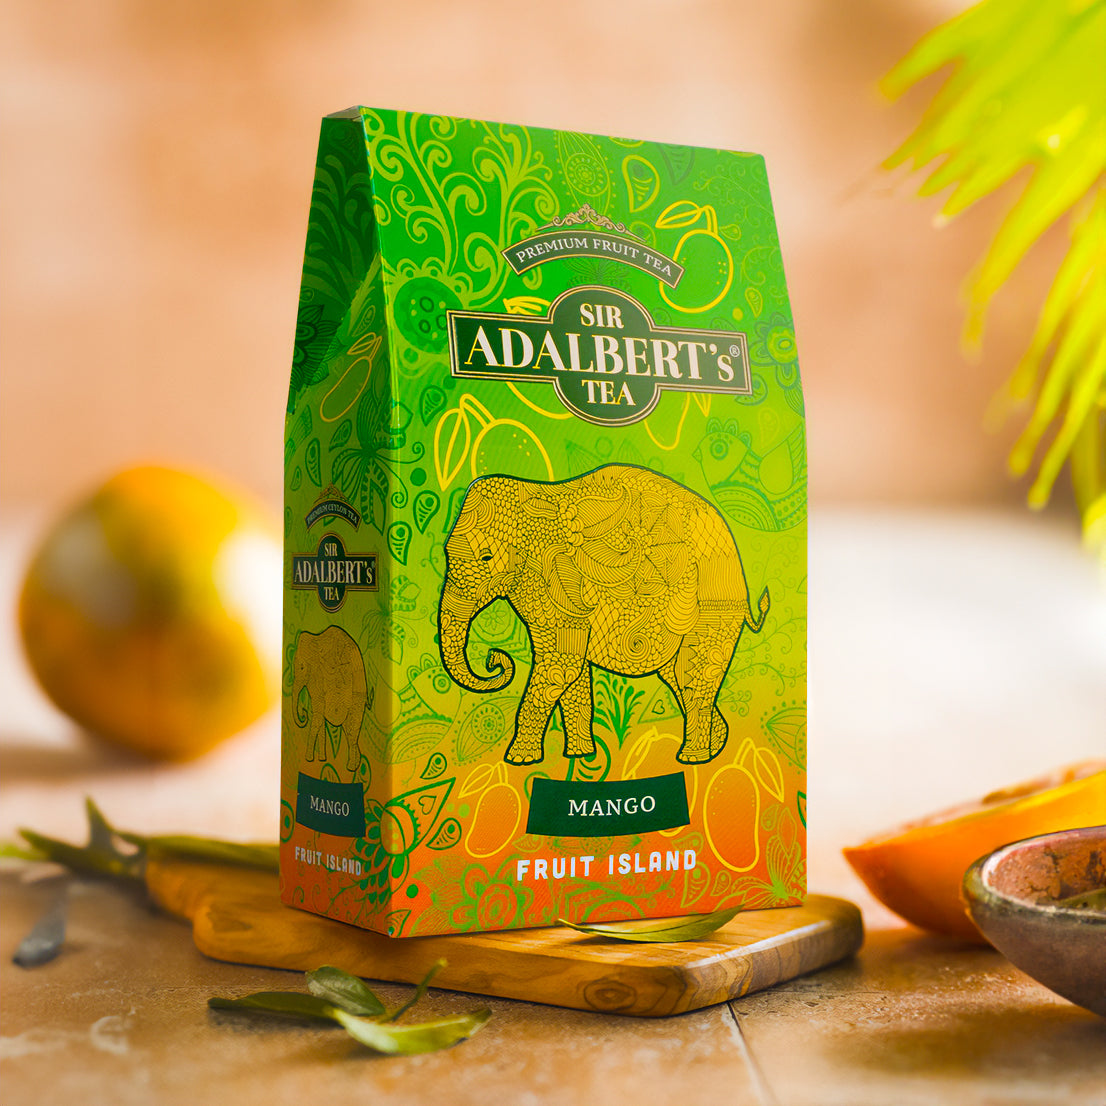 Adalbert's Tea Fruit Island MANGO 100g pouch